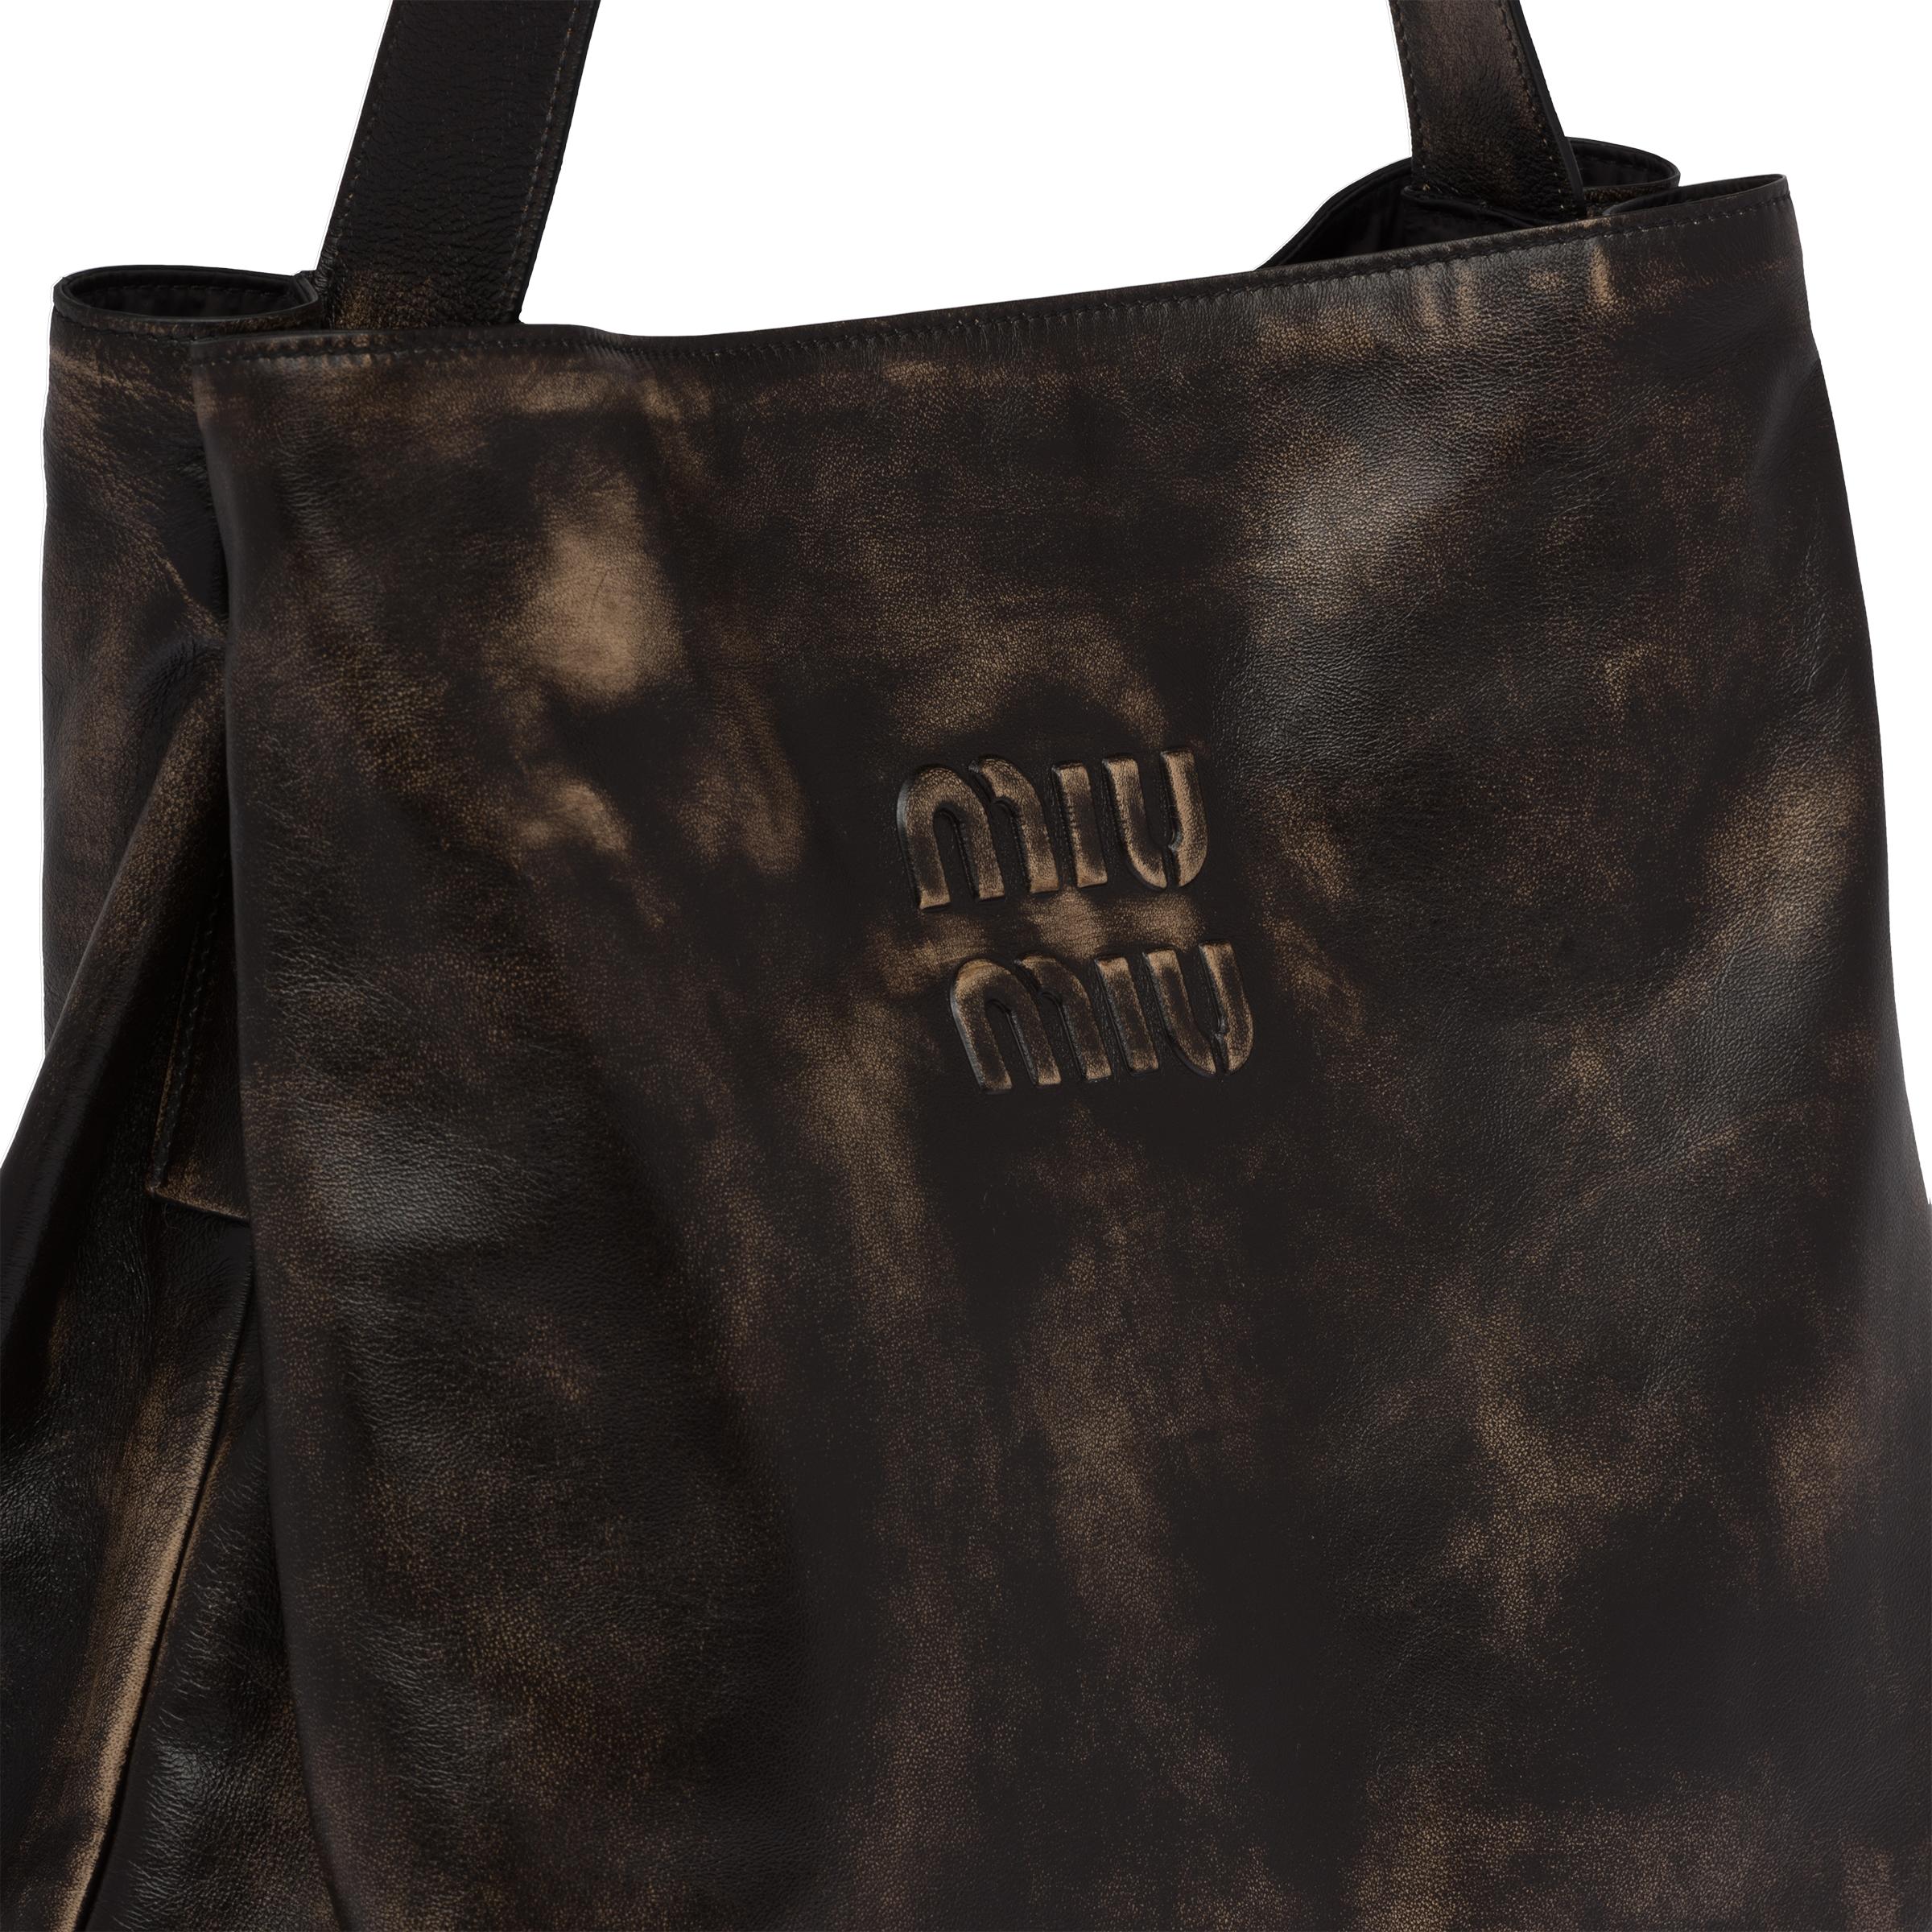 Discount Miu Miu Shoulder Bags - Nappa Leather Black